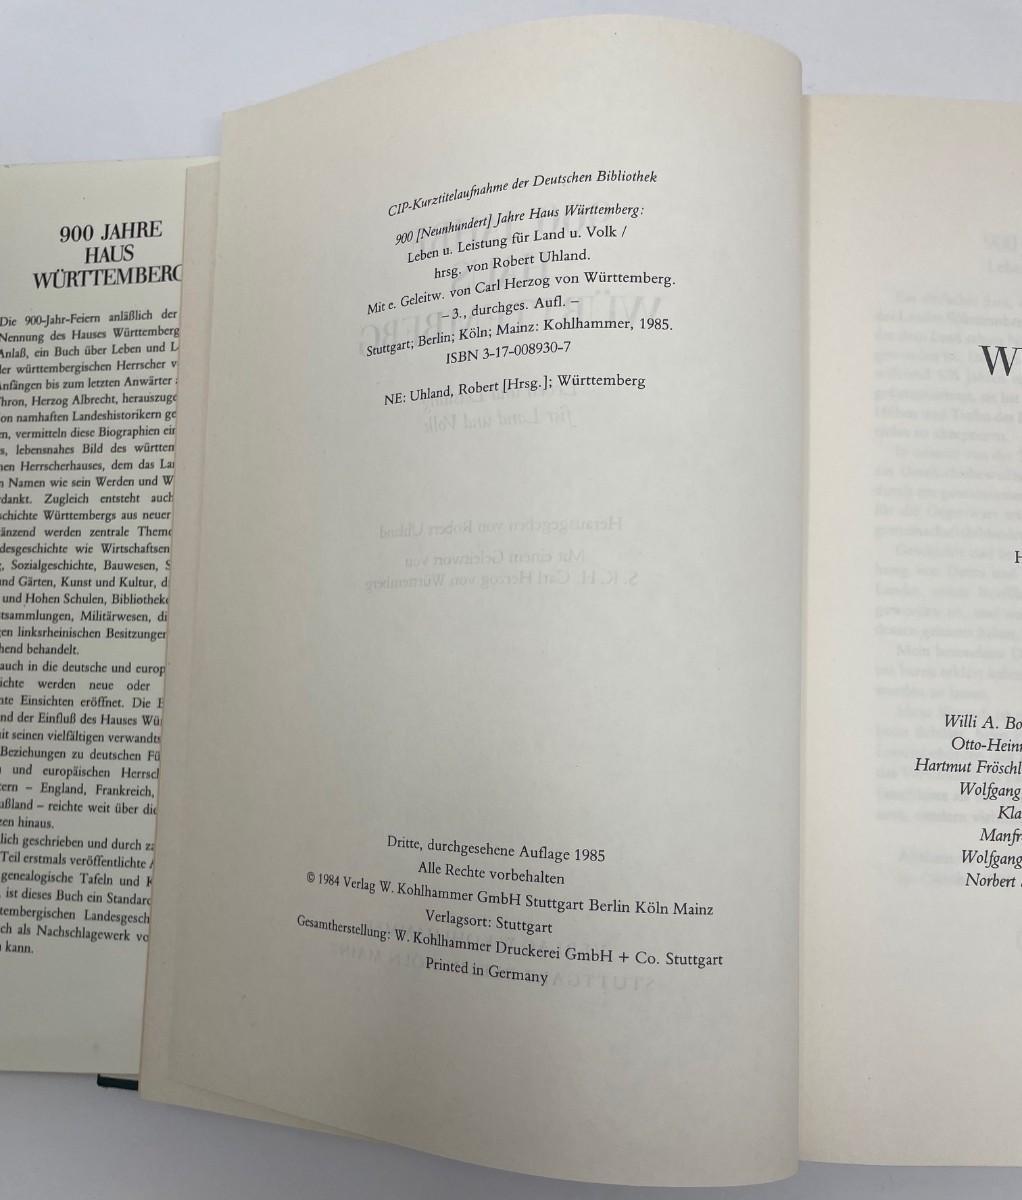 Photo 3 of Book "900 Jahre Hus Wurttemberg Herausgegeben Von Robert Uhland" by Kohl Hammer